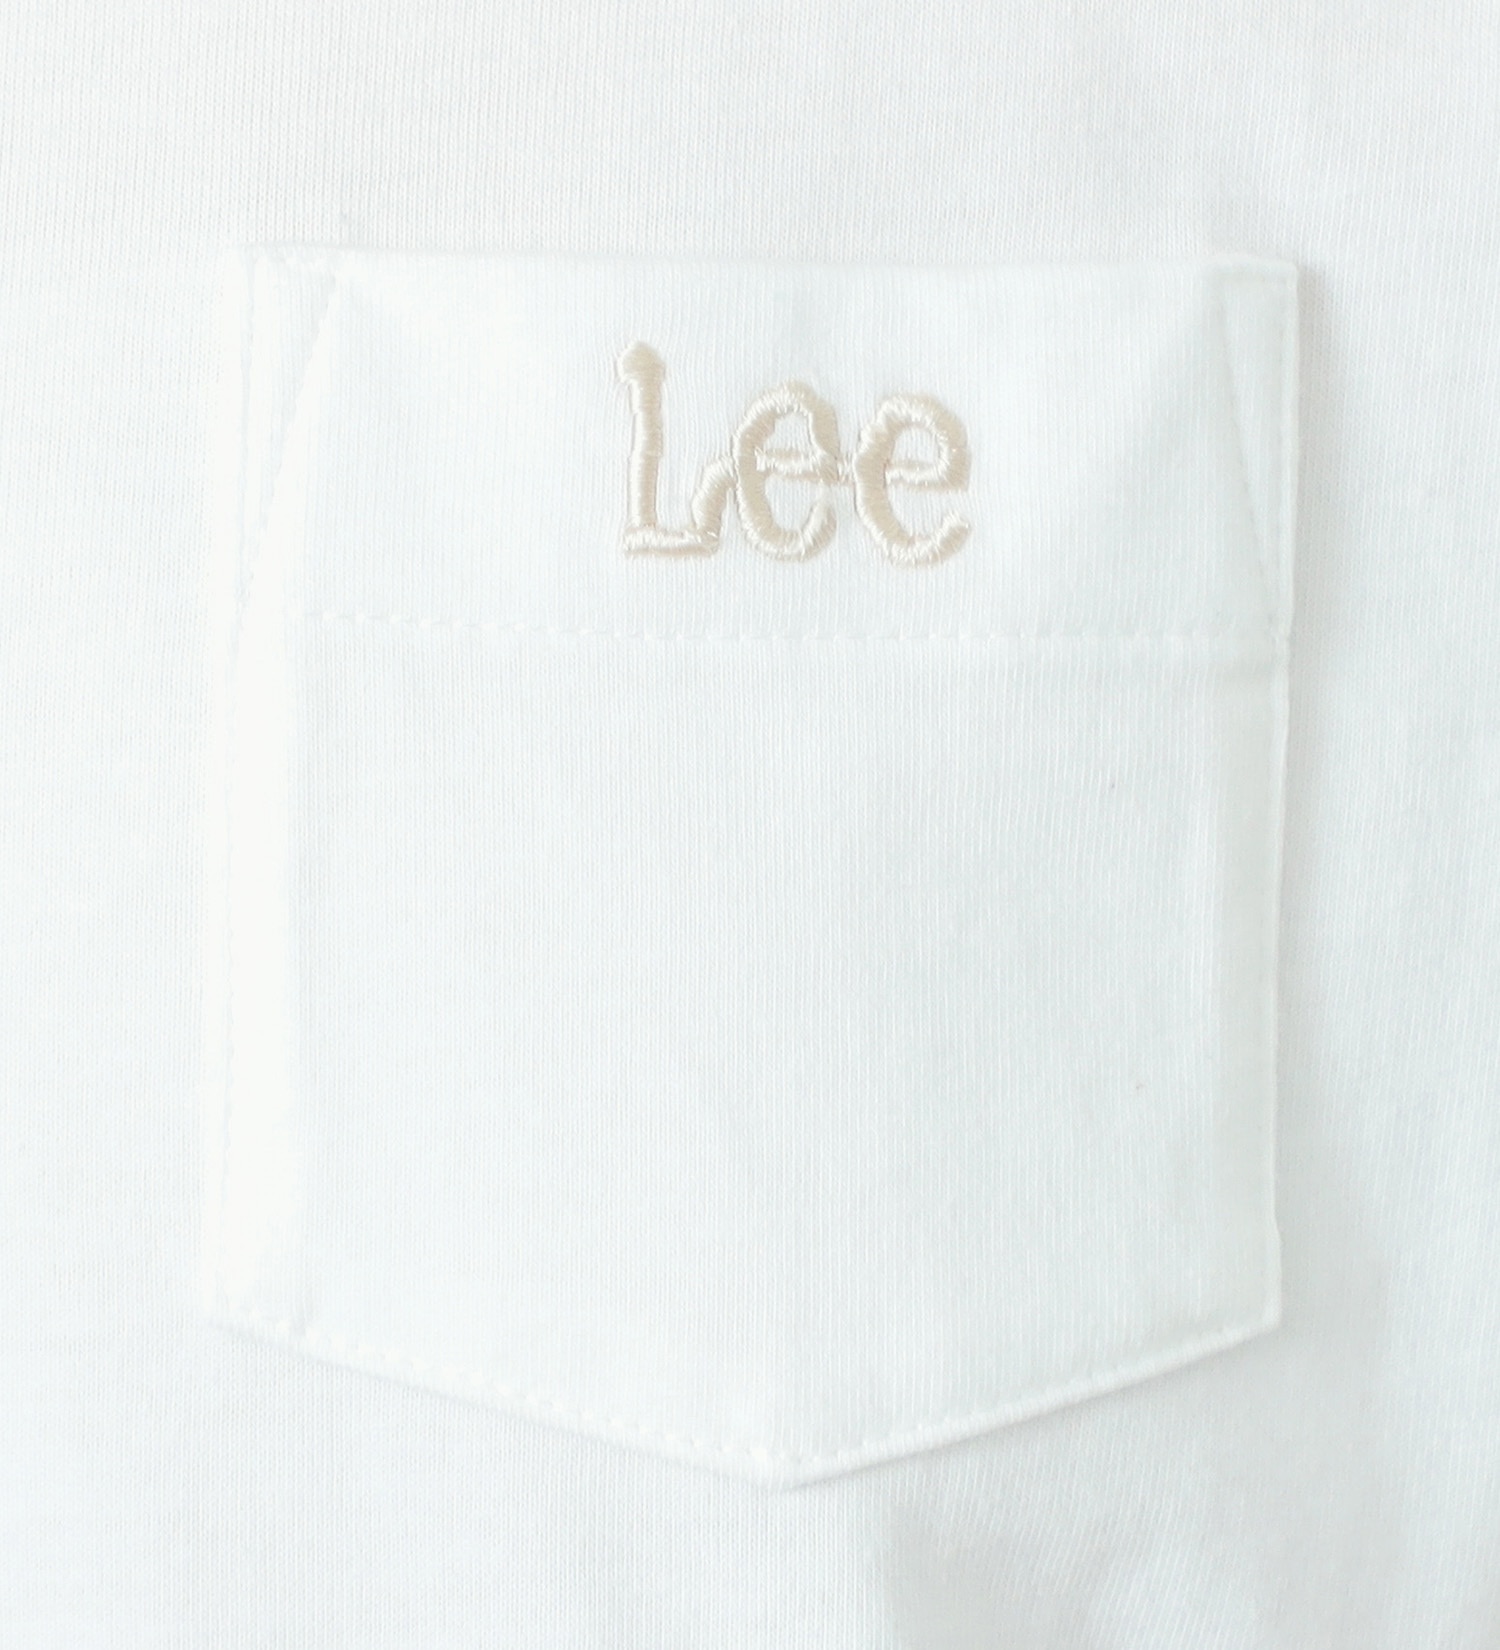 Lee(リー)のポケットロゴ刺繍 ハーフスリーブTee|トップス/Tシャツ/カットソー/レディース|ホワイト2